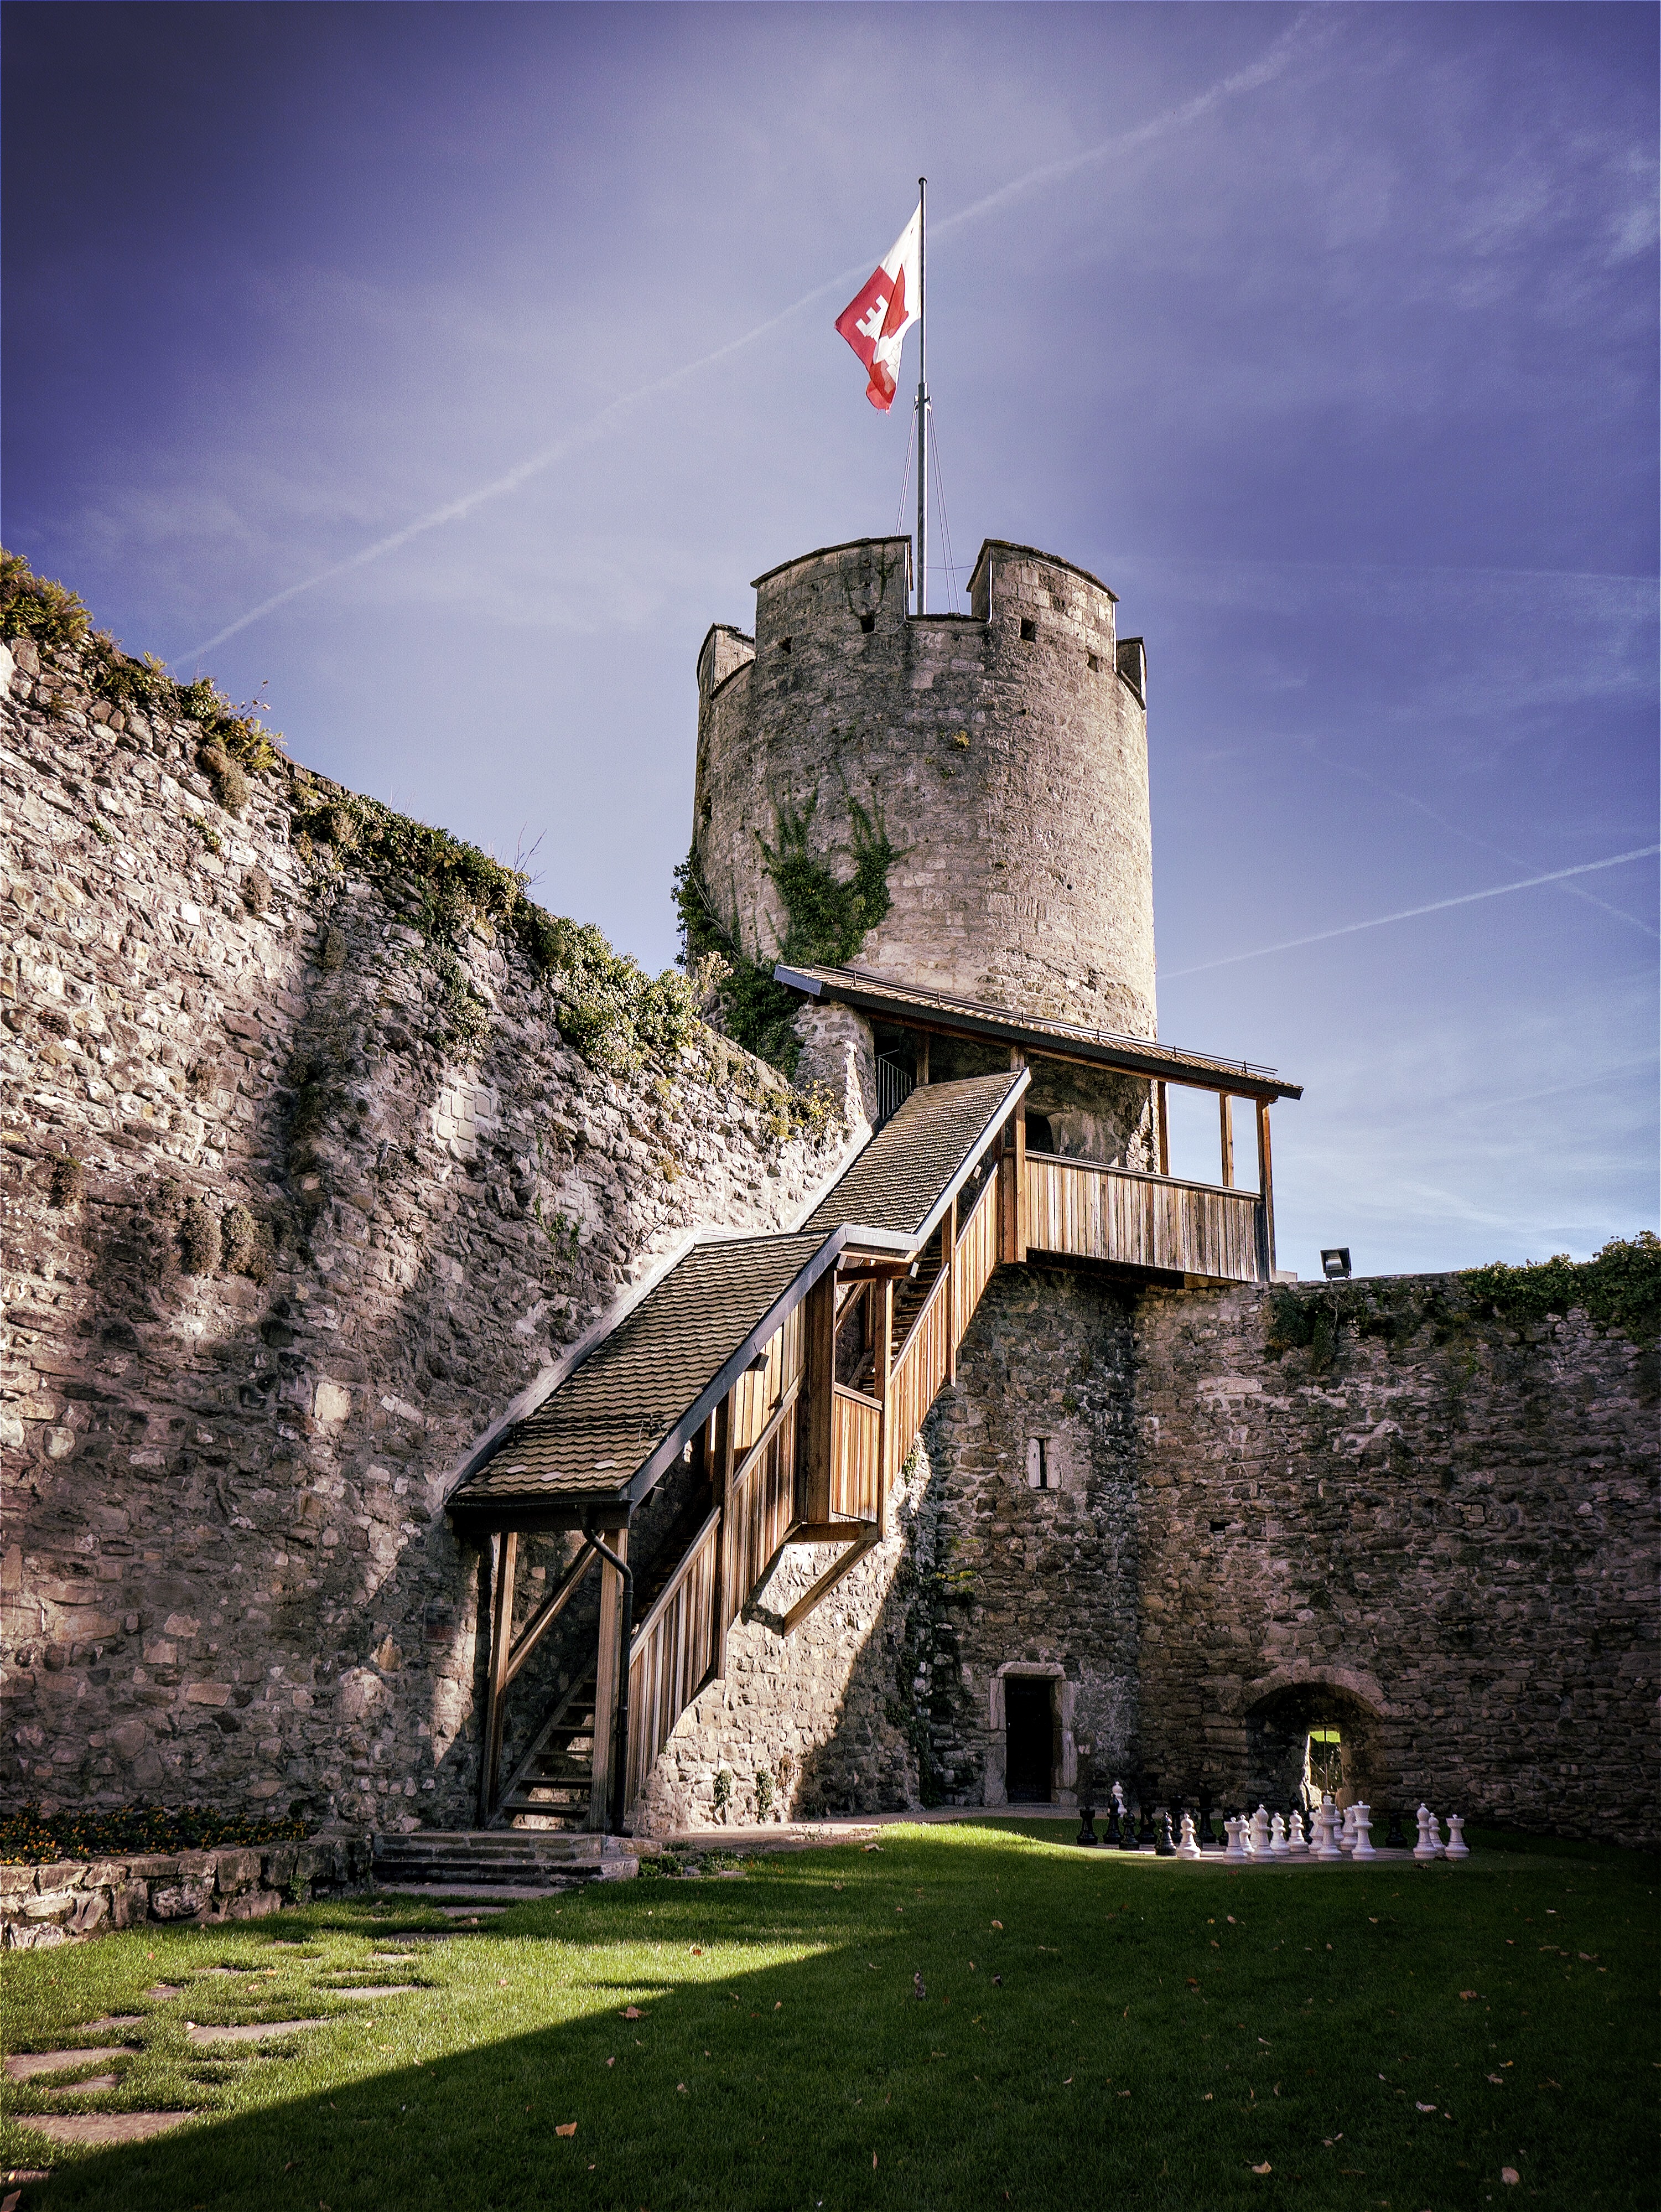 Les opposants à la rénovation du Château de La Tour-de-Peilz participeront à un débat public